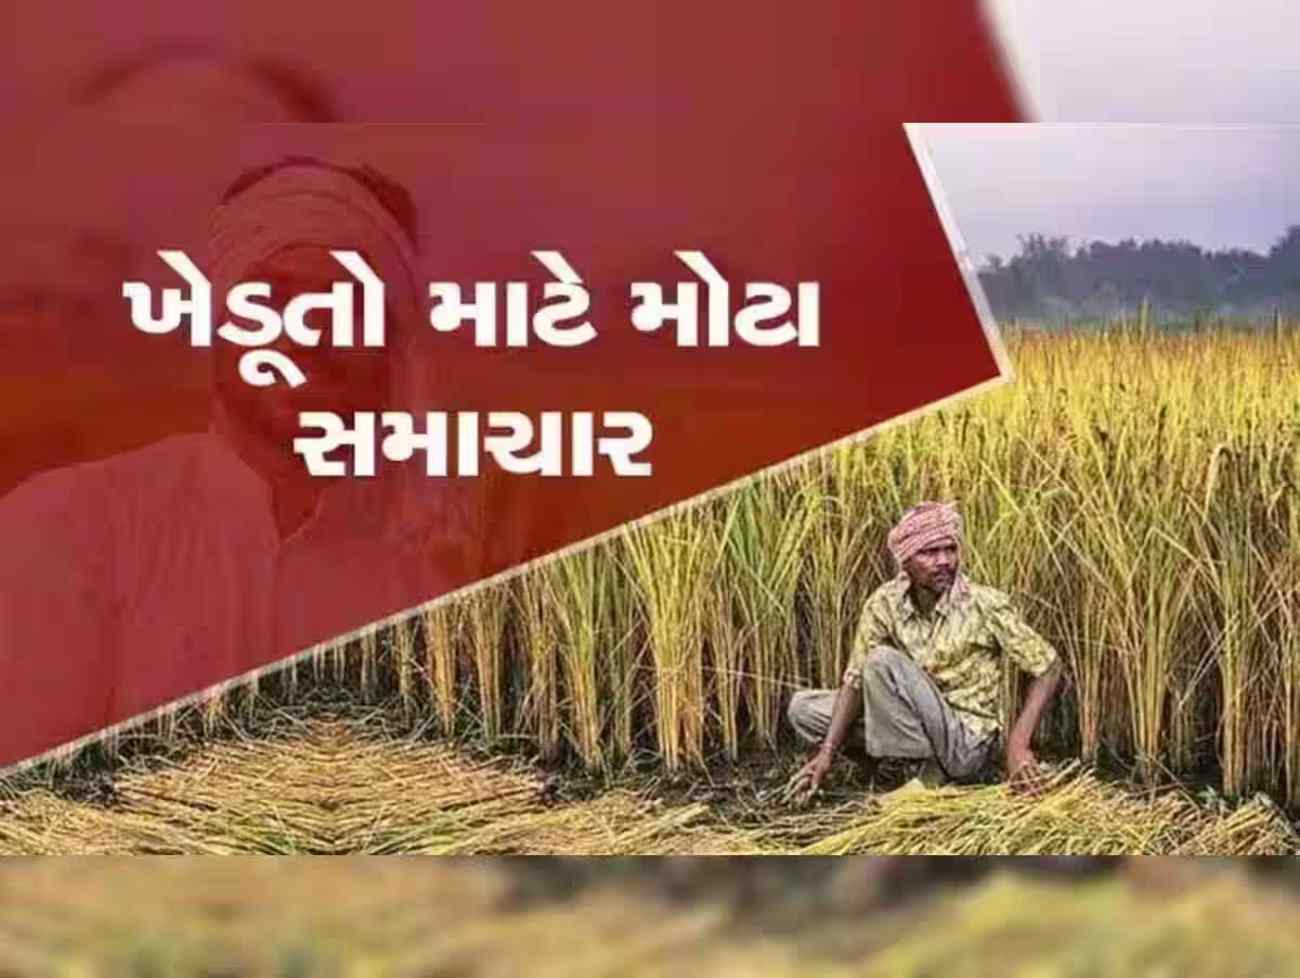 ગુજરાતના ખેડૂતો તૈયાર રહેજો! સરકારી યોજનાનો લાભ લેવા આ તારીખથી ખુલ્લુ મુકાશે આઈ-ખેડૂત પોર્ટલ